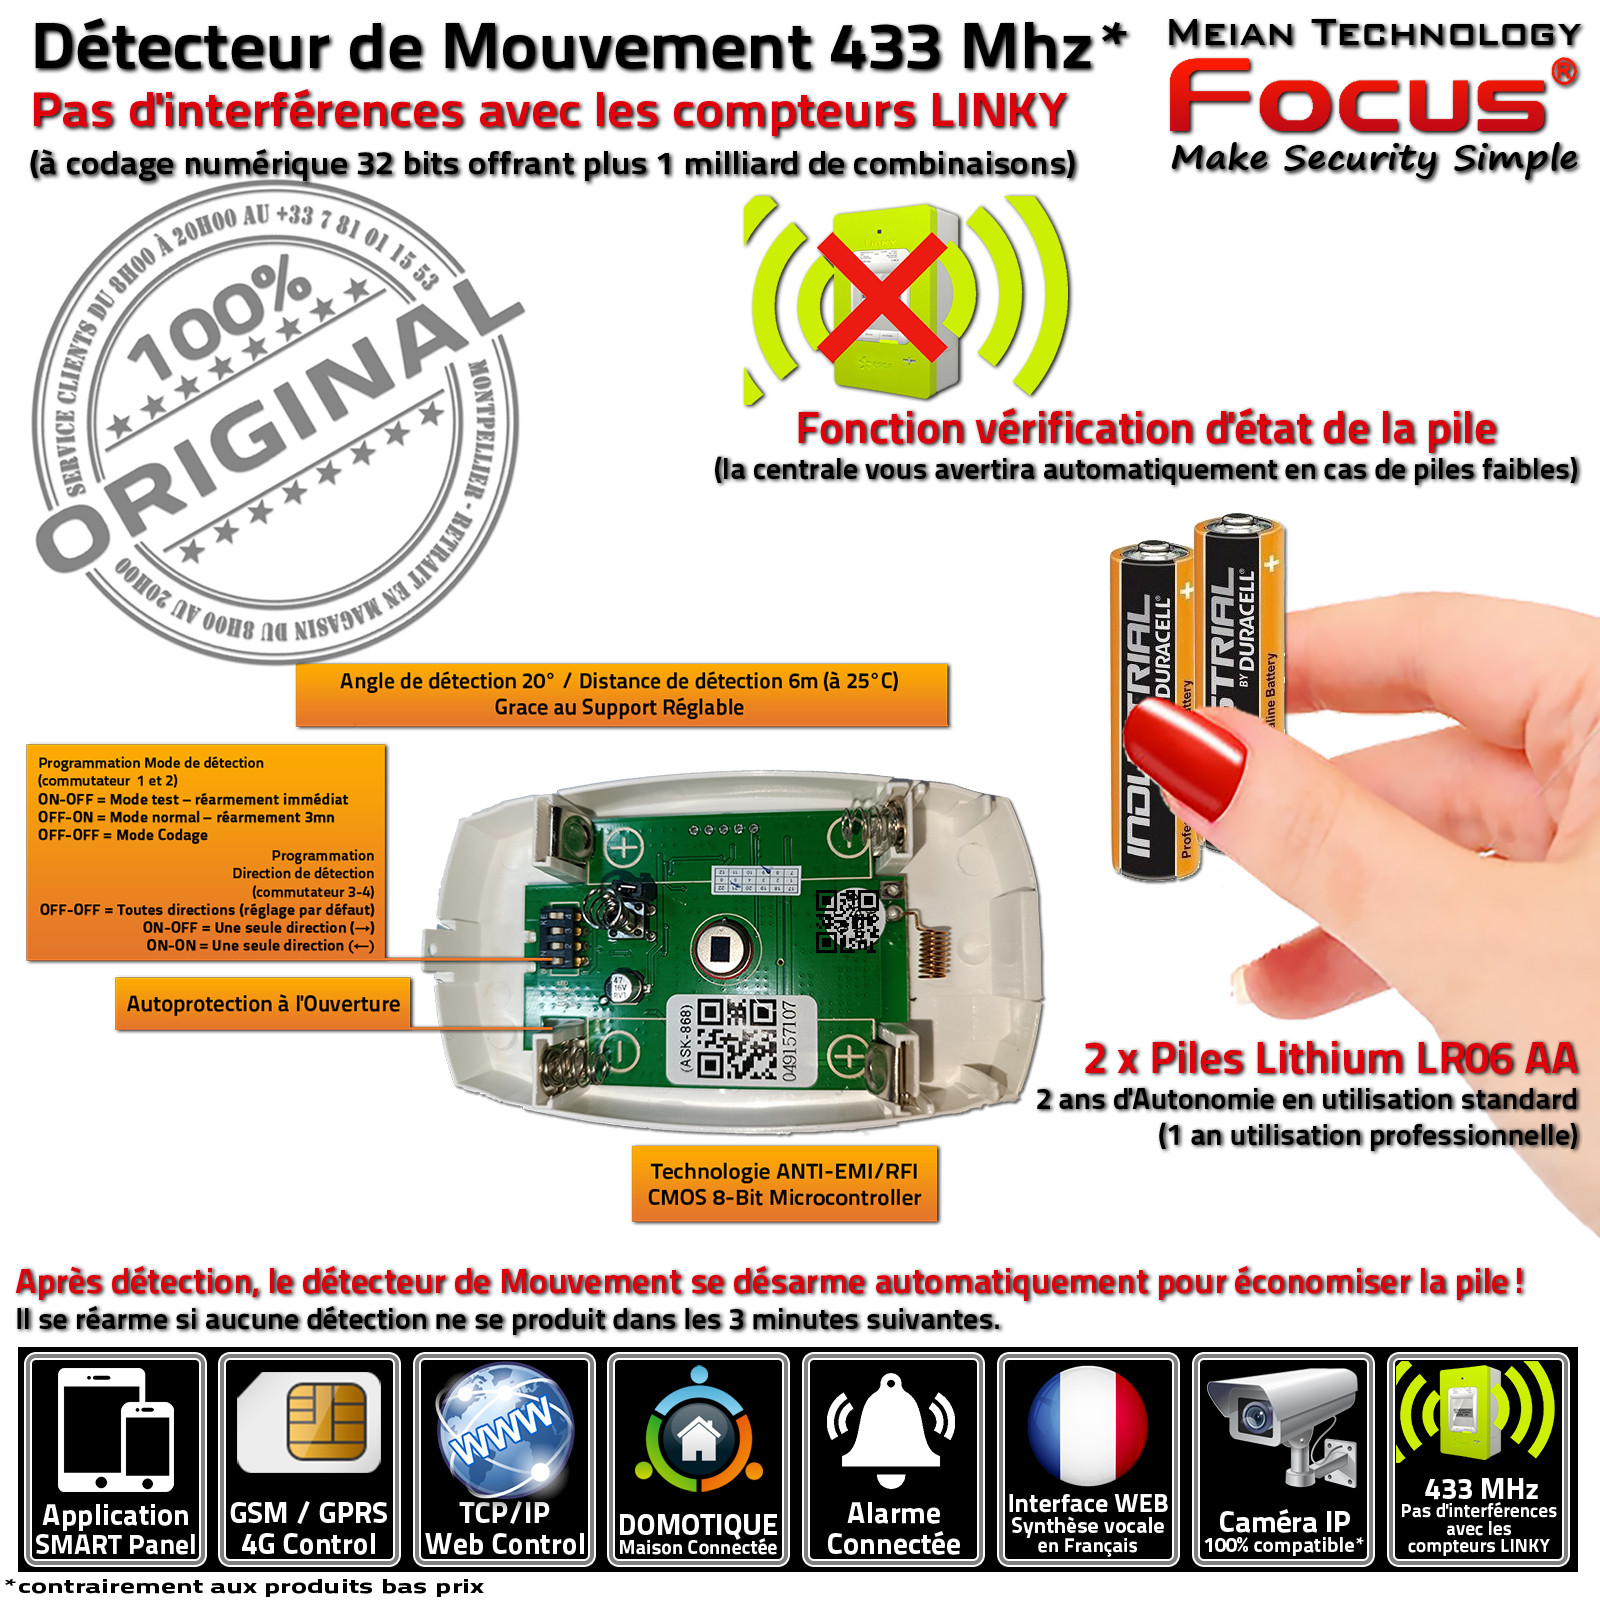 Capteur Passage Présence Radar Immunité Animaux Détection Commerce MD 448R 433 MHz Meian FOCUS Système Sécurité Connecté IP GSM